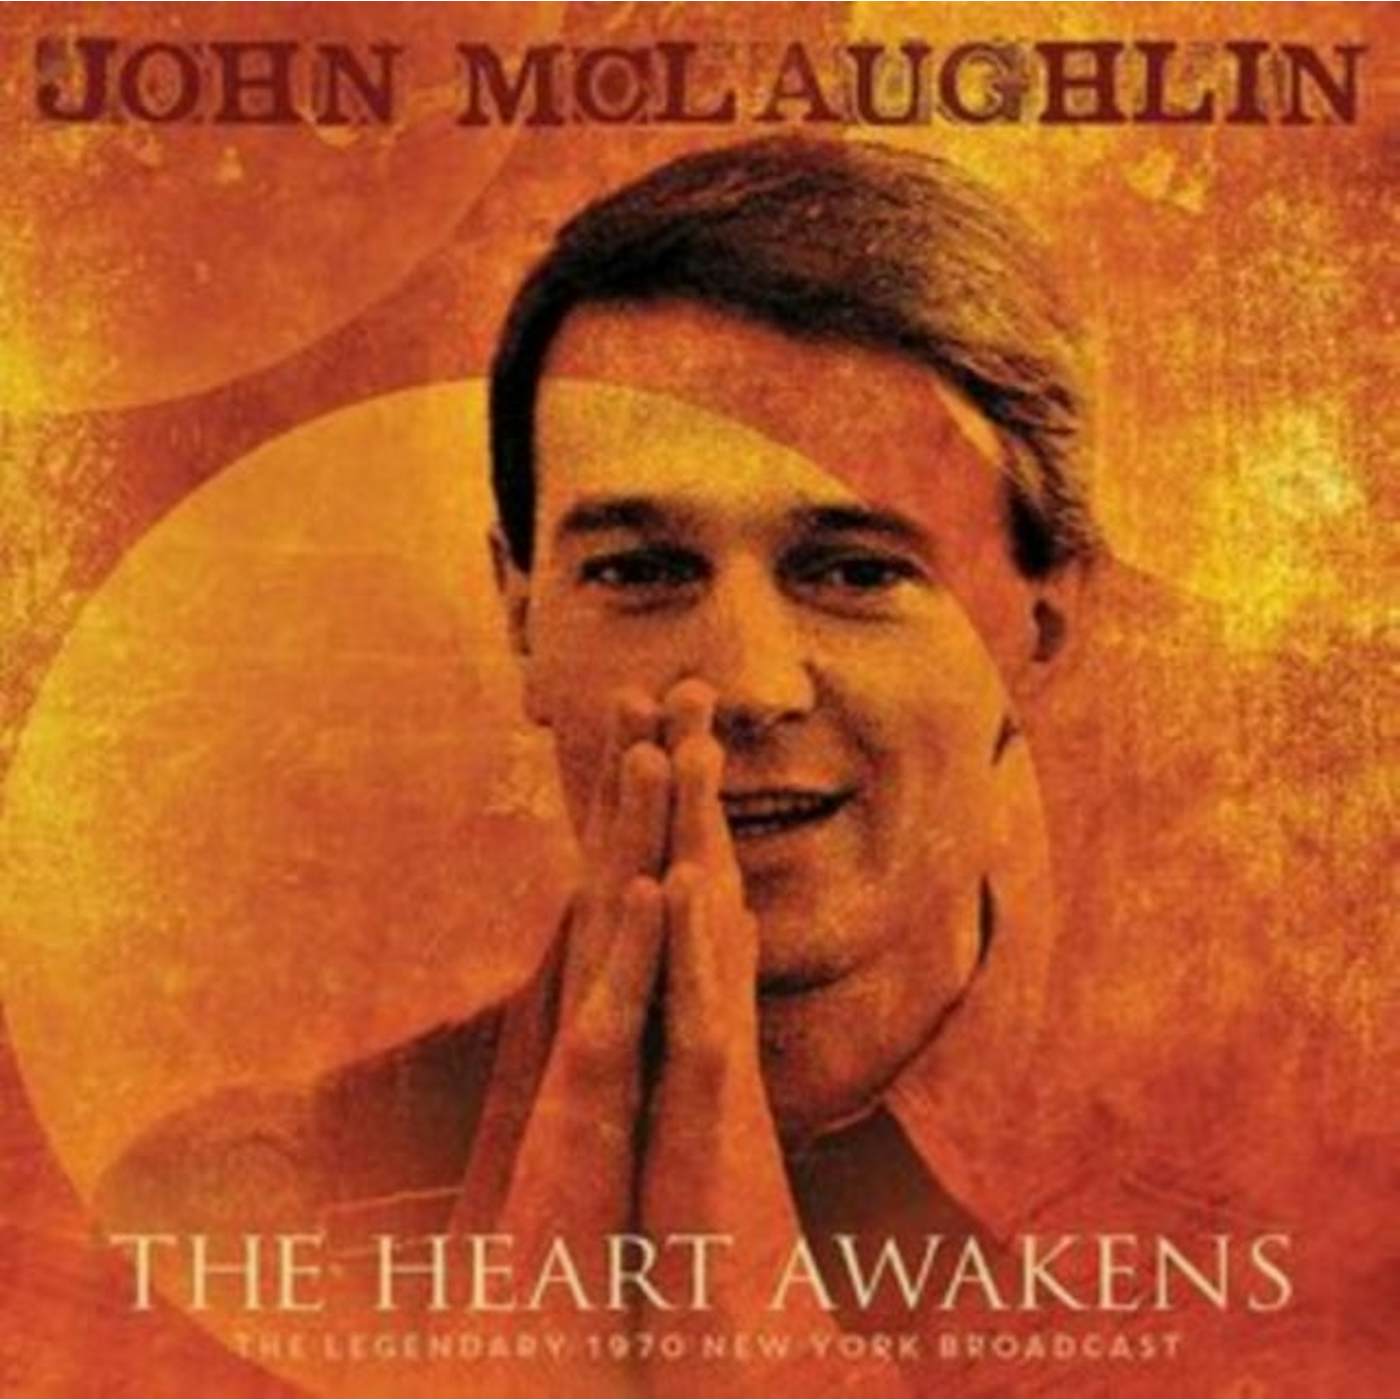 John Mclaughlin CD - The Heart Awakens